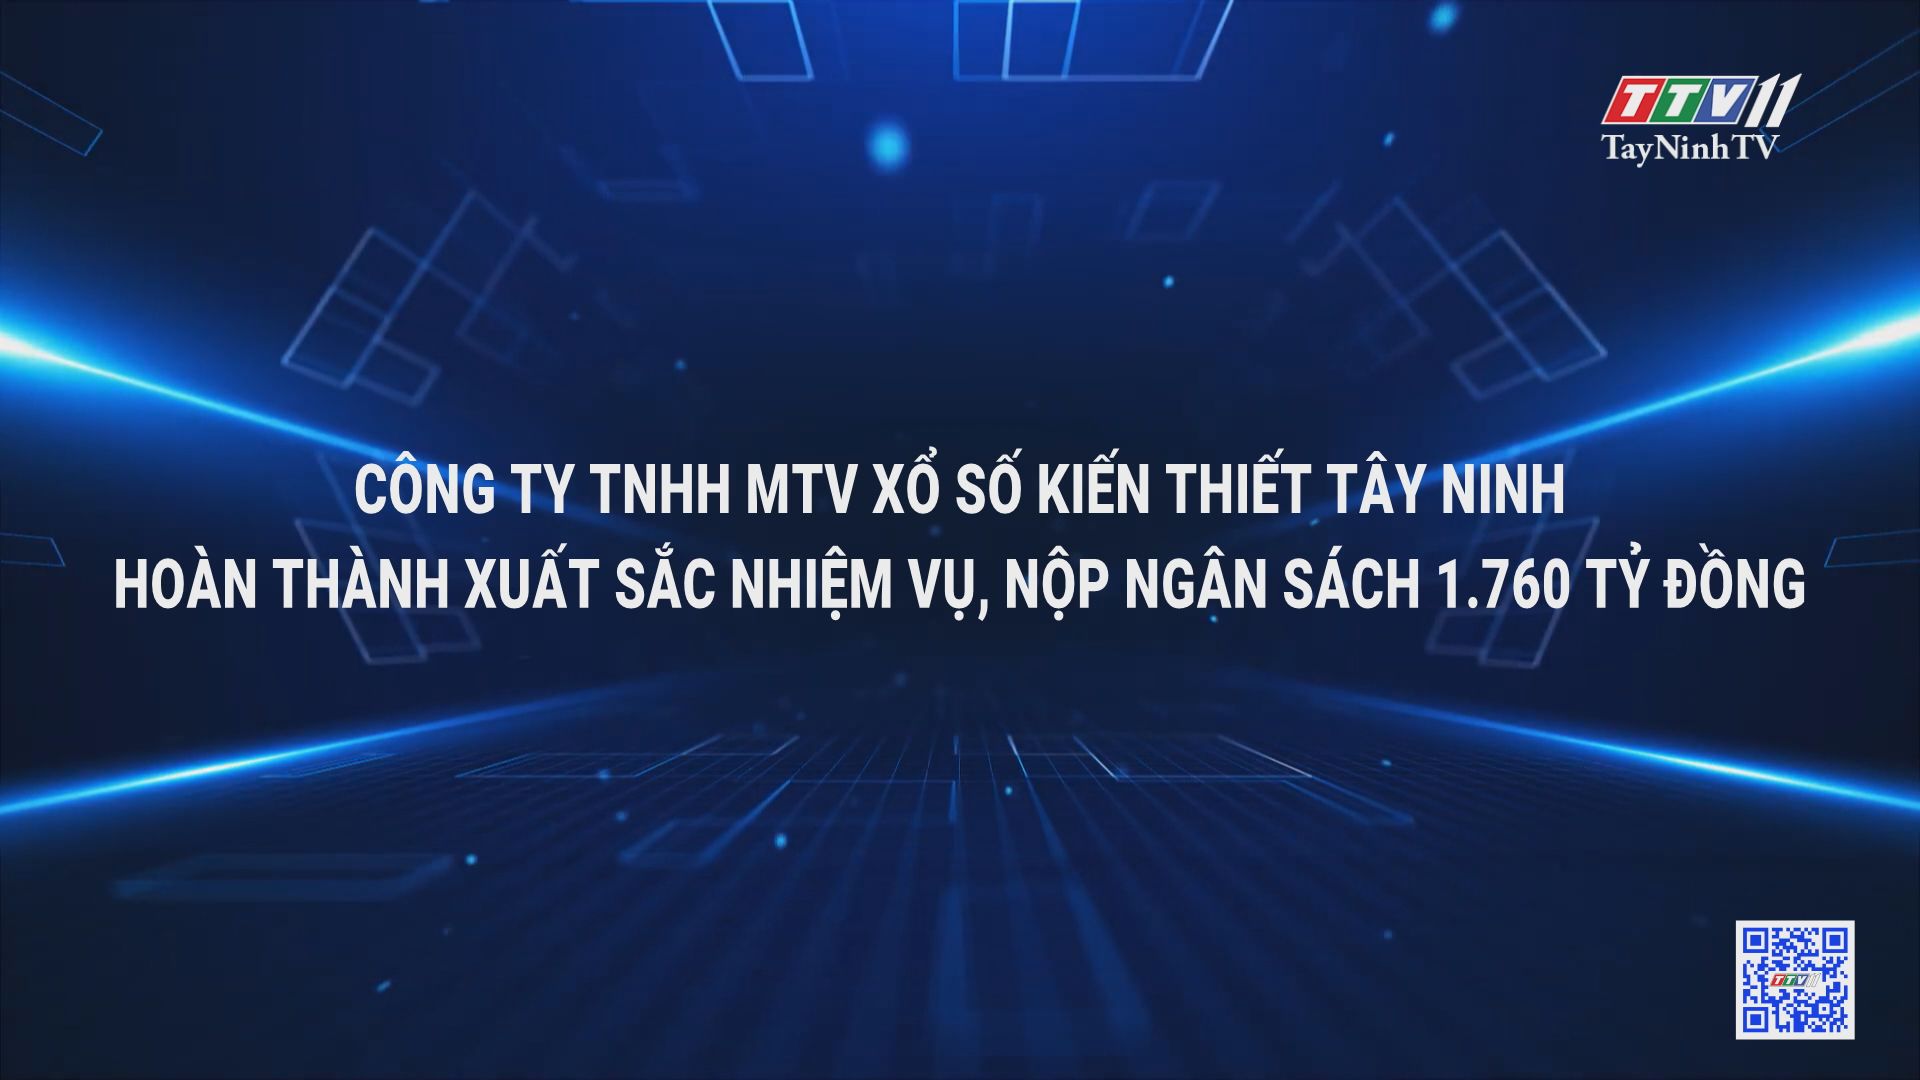 Công ty TNHH MTV Xổ số Kiến thiết Tây Ninh 